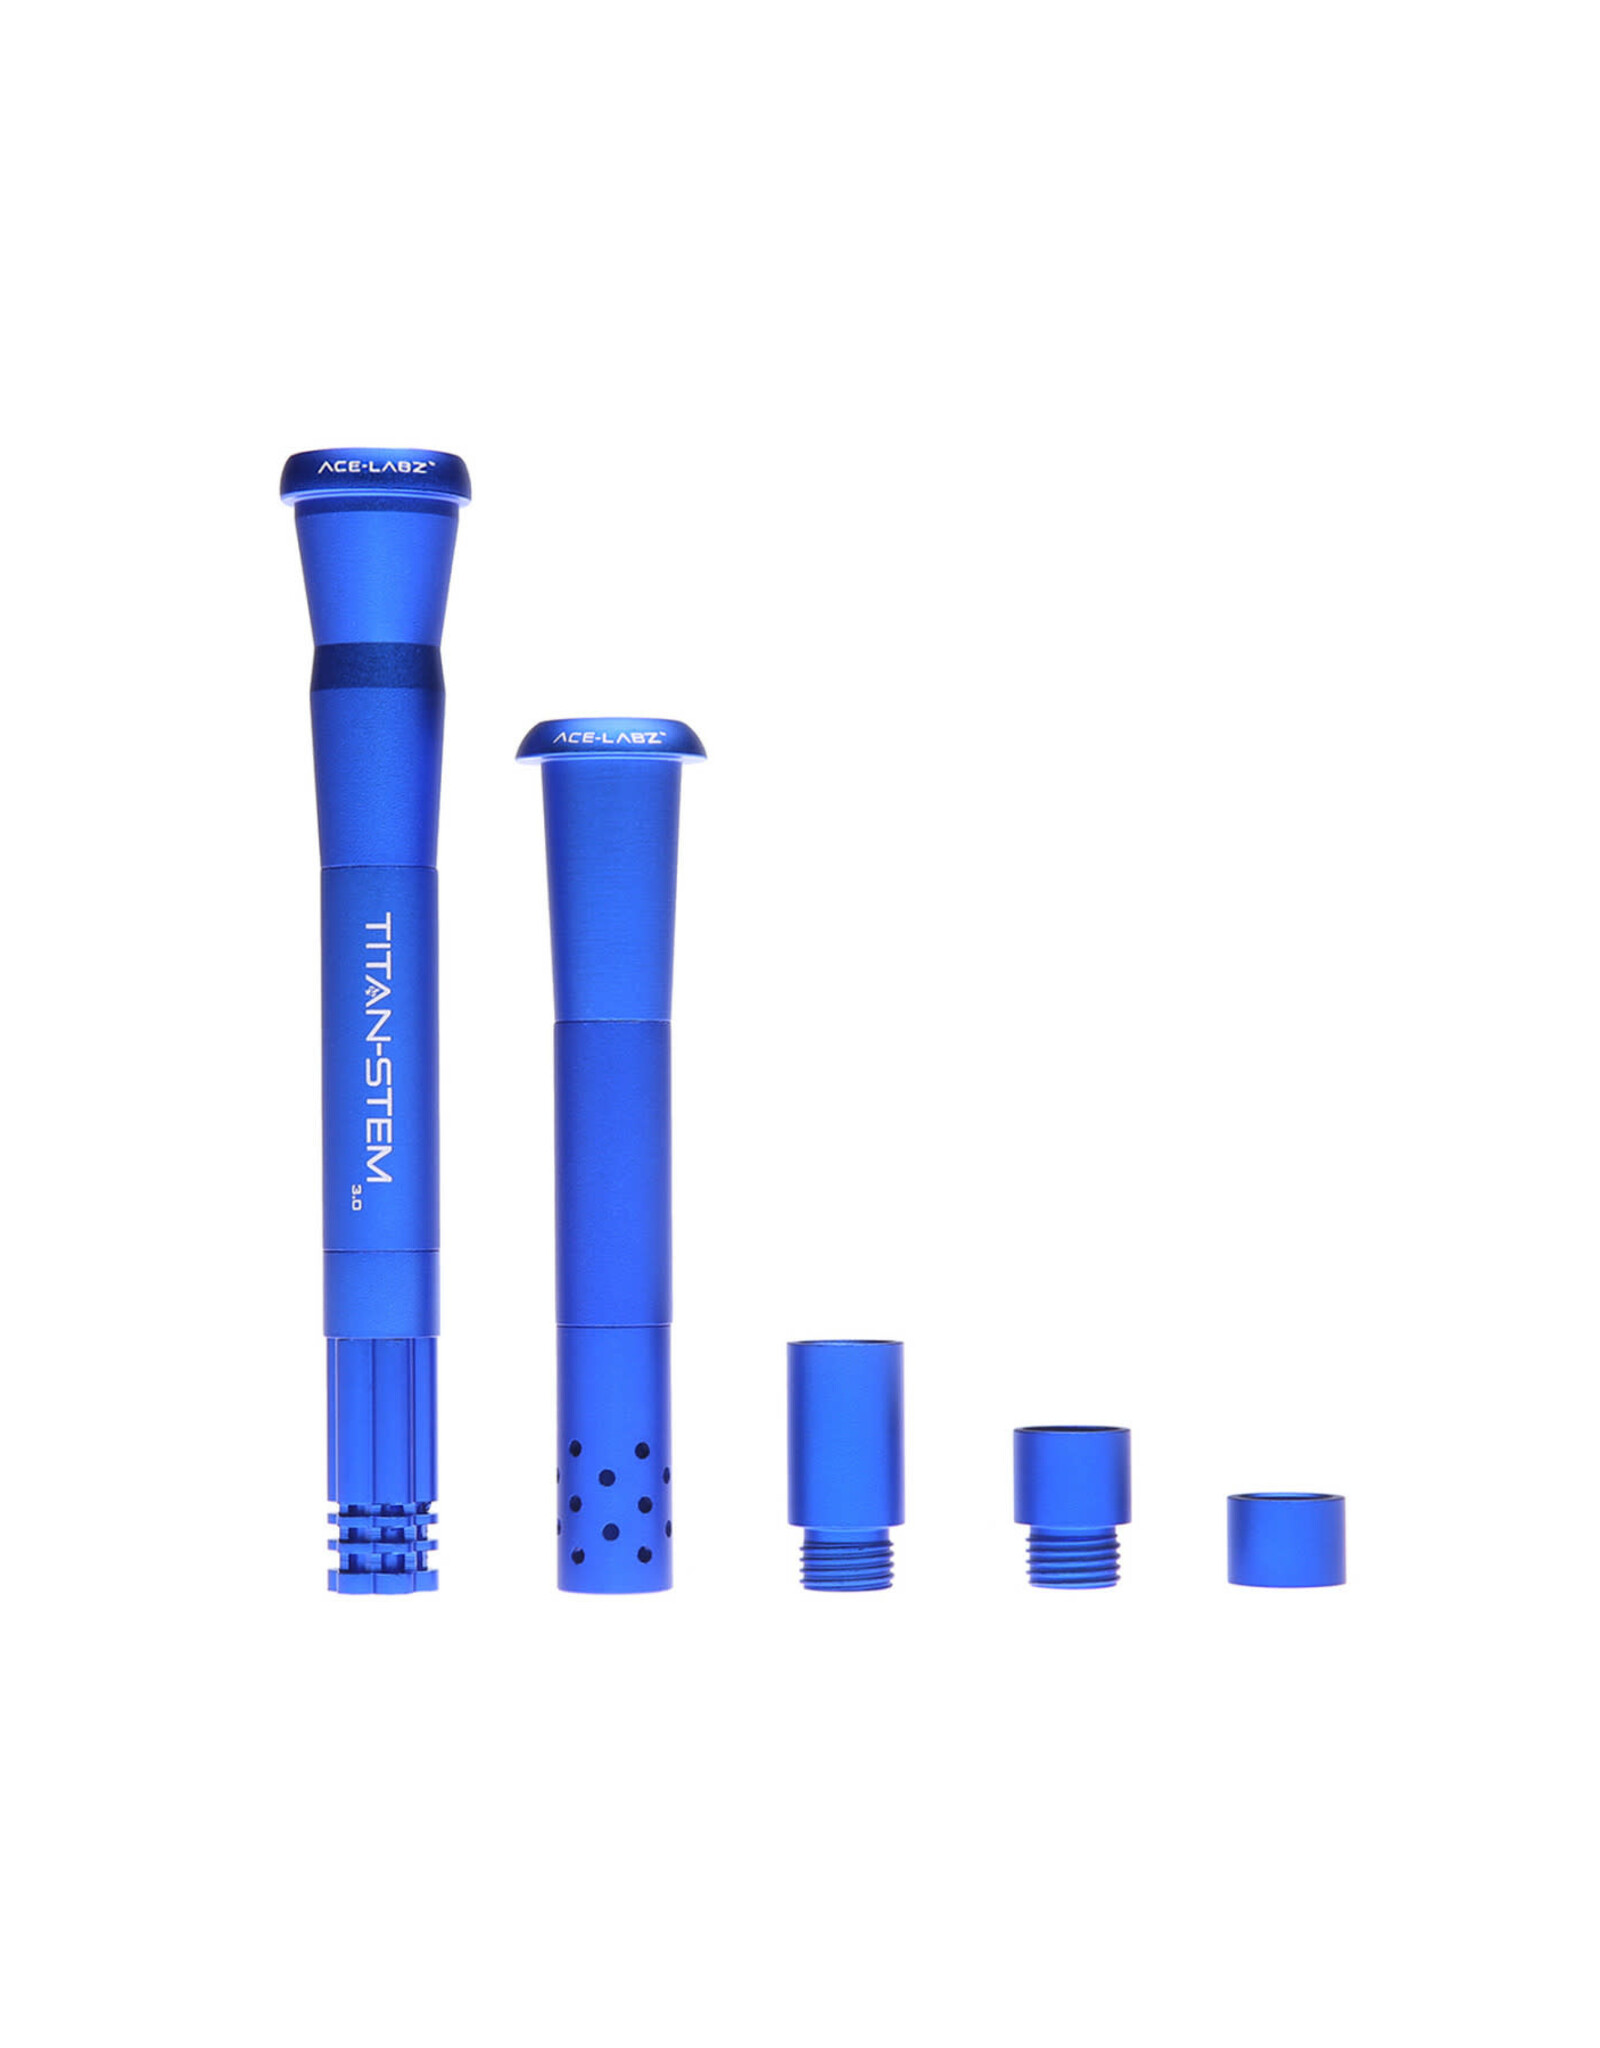 West Coast Gifts Titan-Stem 3.0 Adjustable Length Metal Downstem BLUE